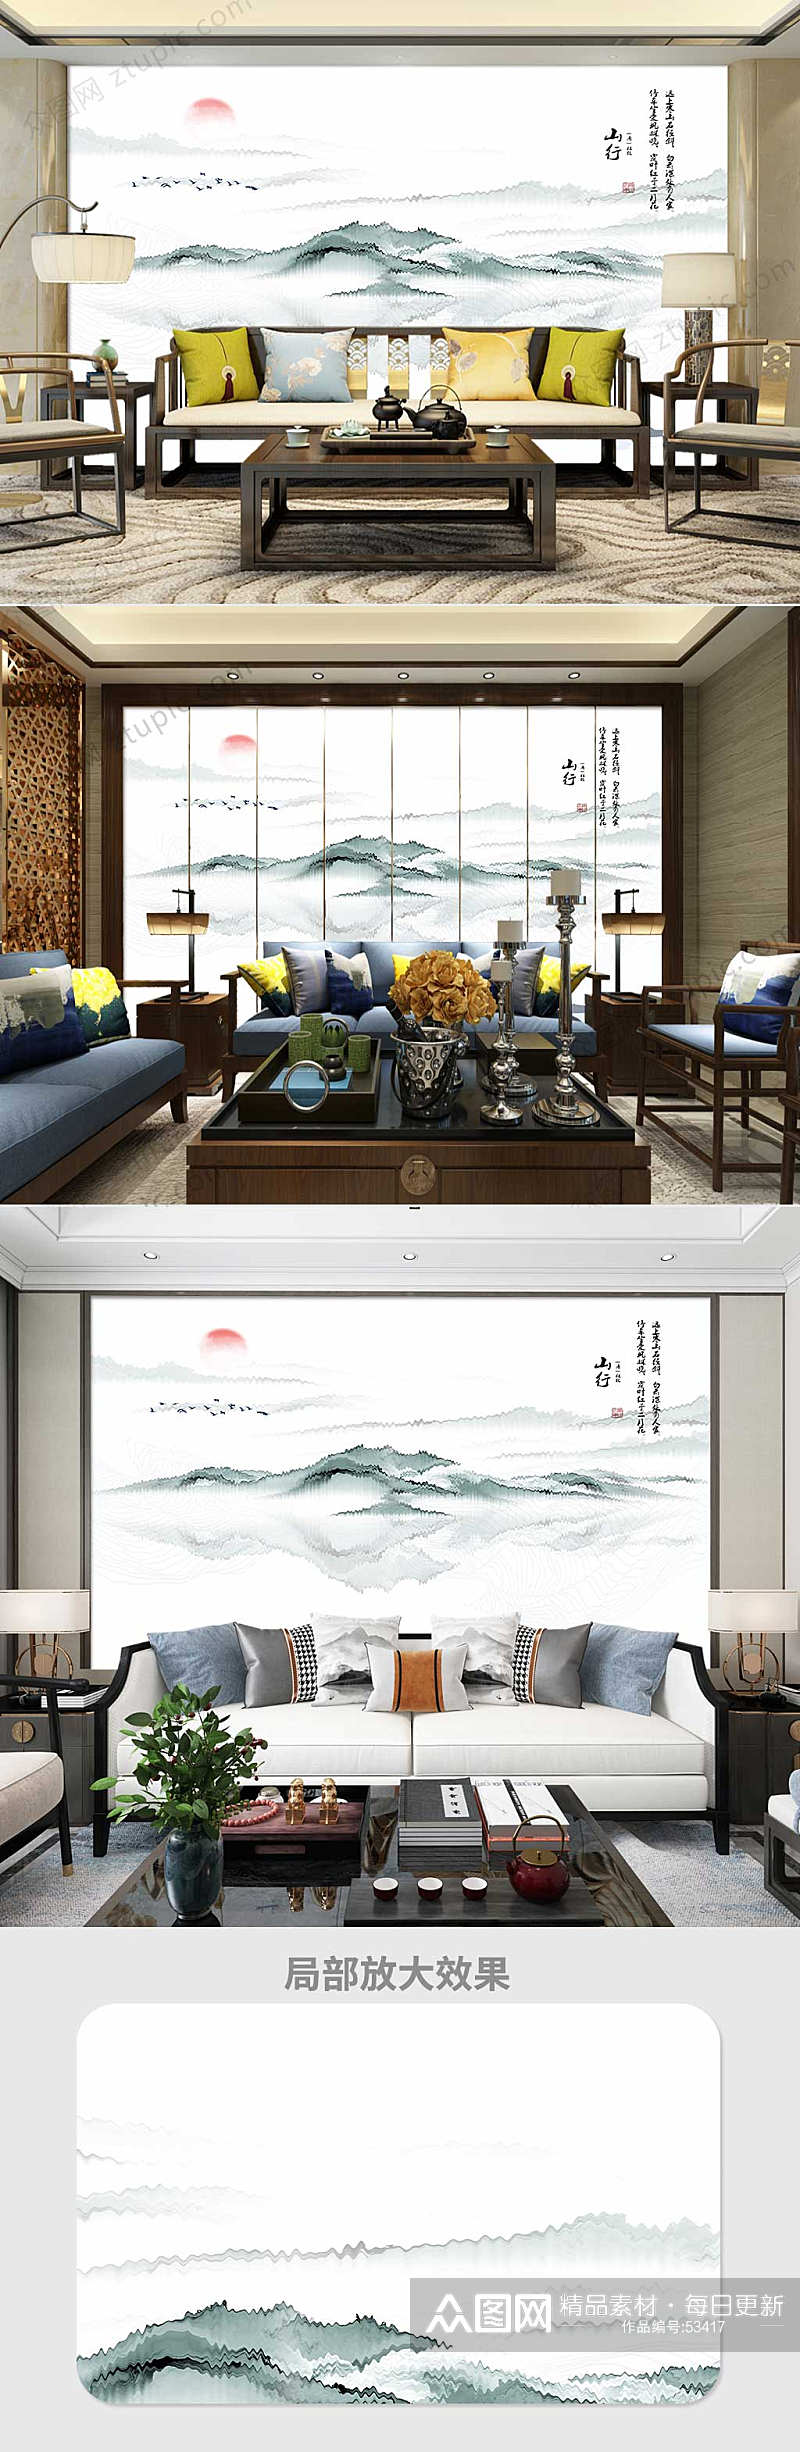 中式山水画背景墙素材